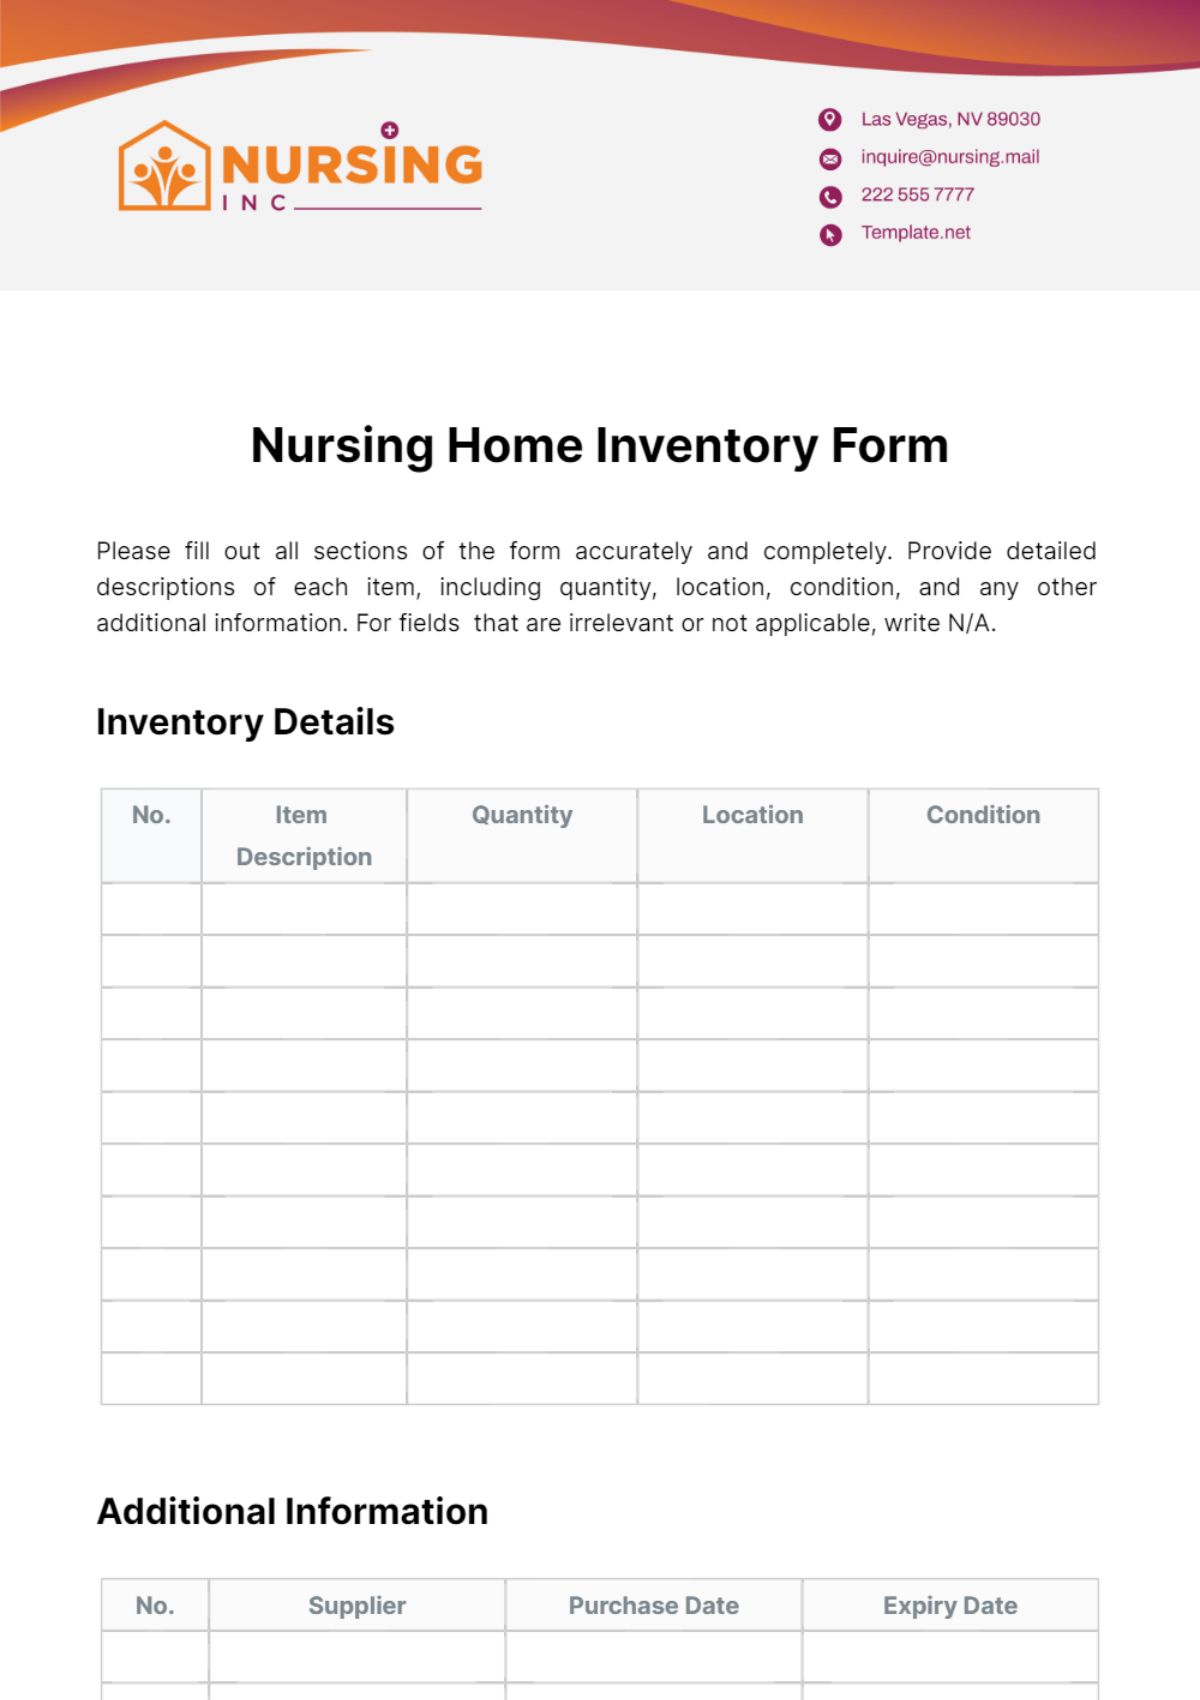 Nursing Home Inventory Form Template